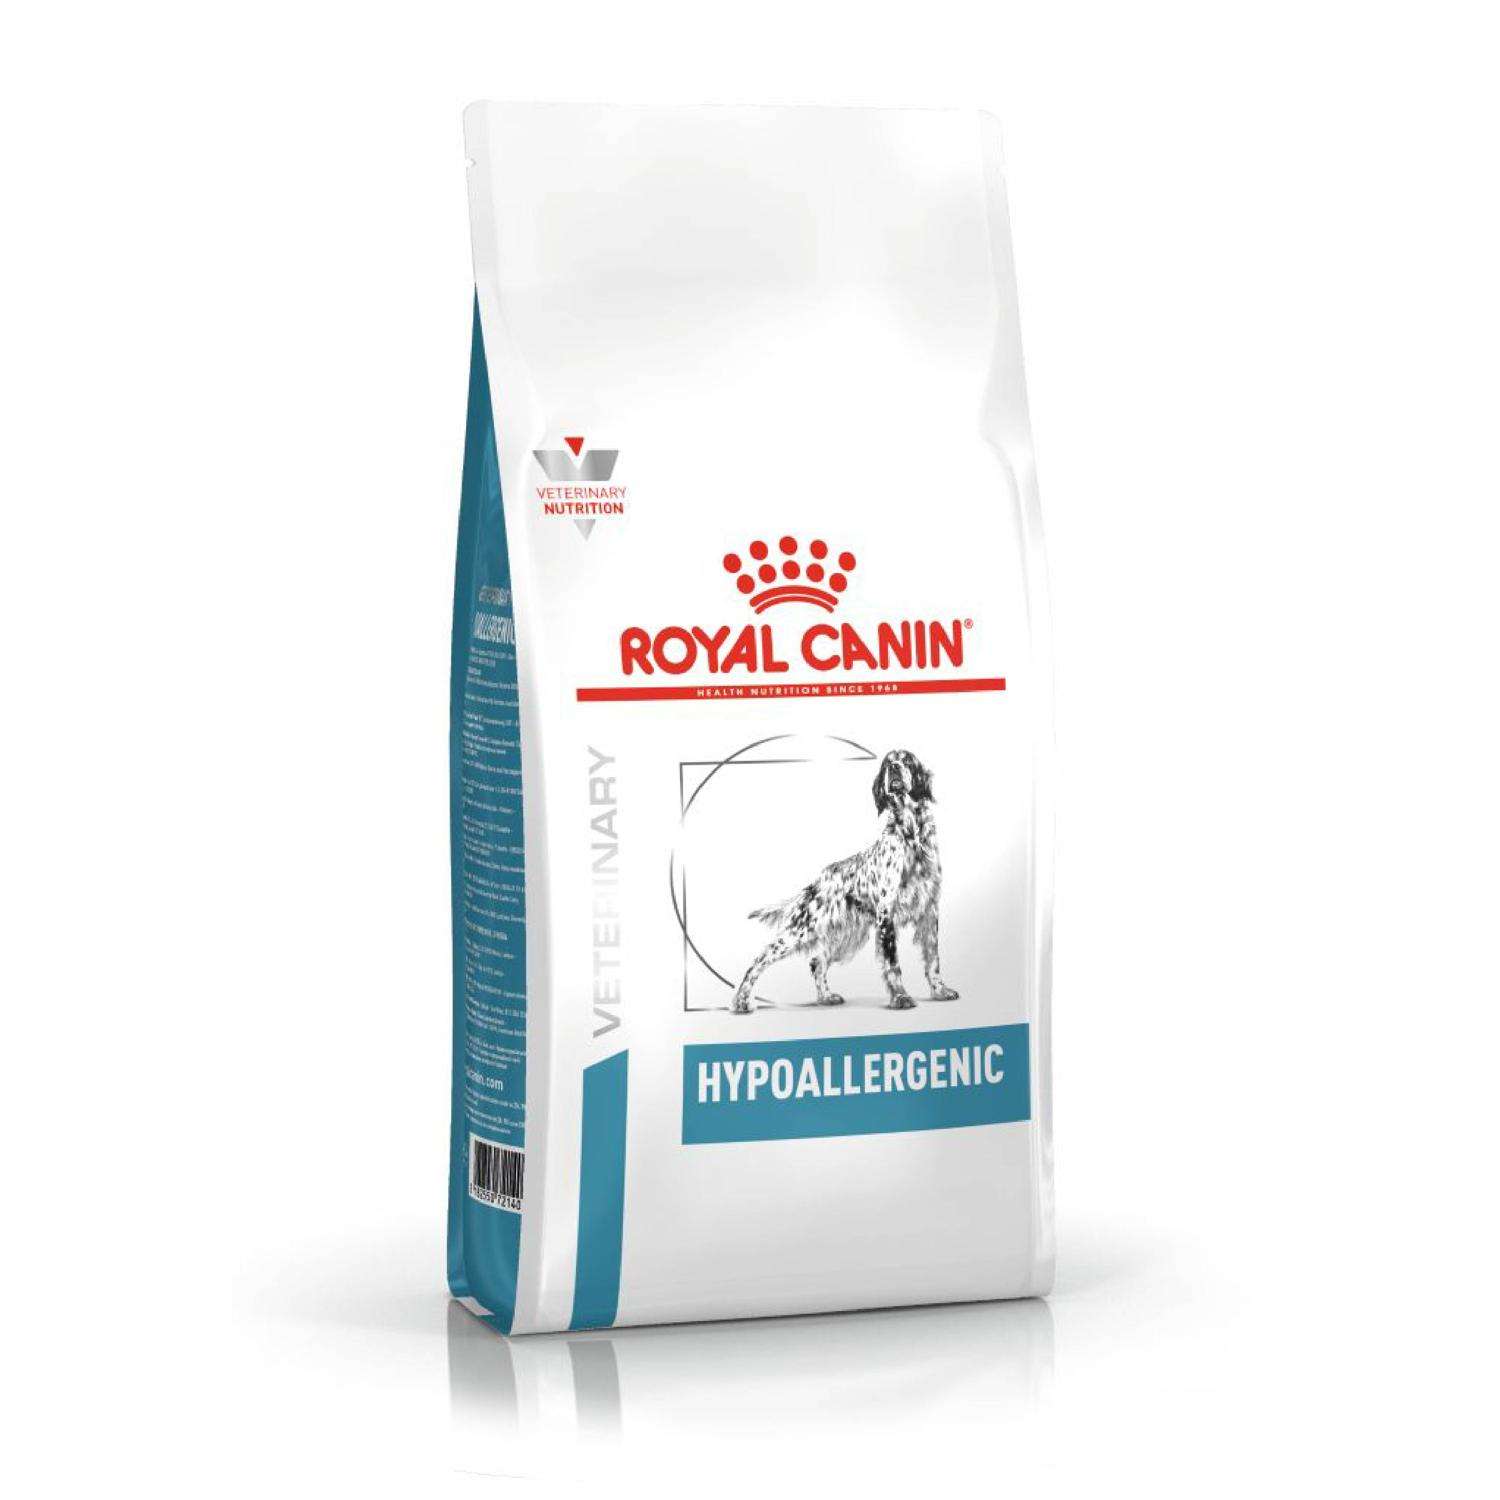 Сухие гипоаллергенные корма для собак премиум класса BonaVentura